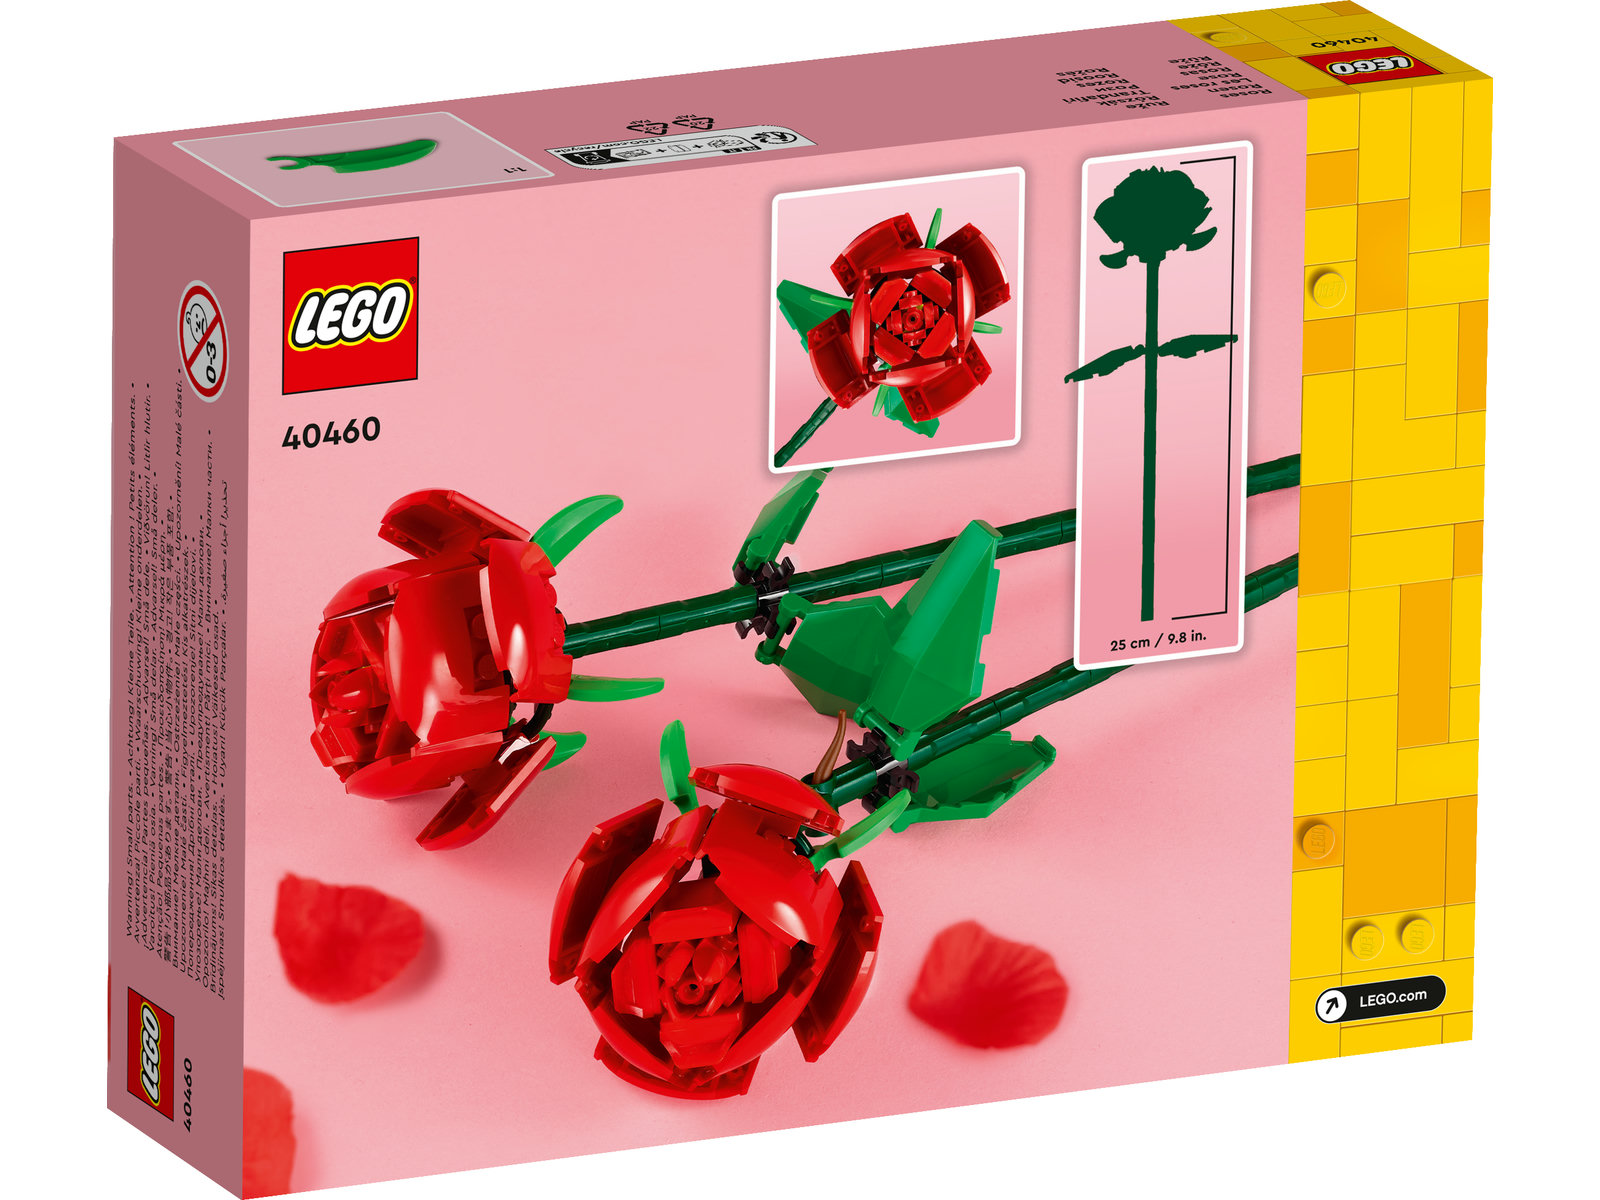 LEGO® Iconic 40460 - Rosen